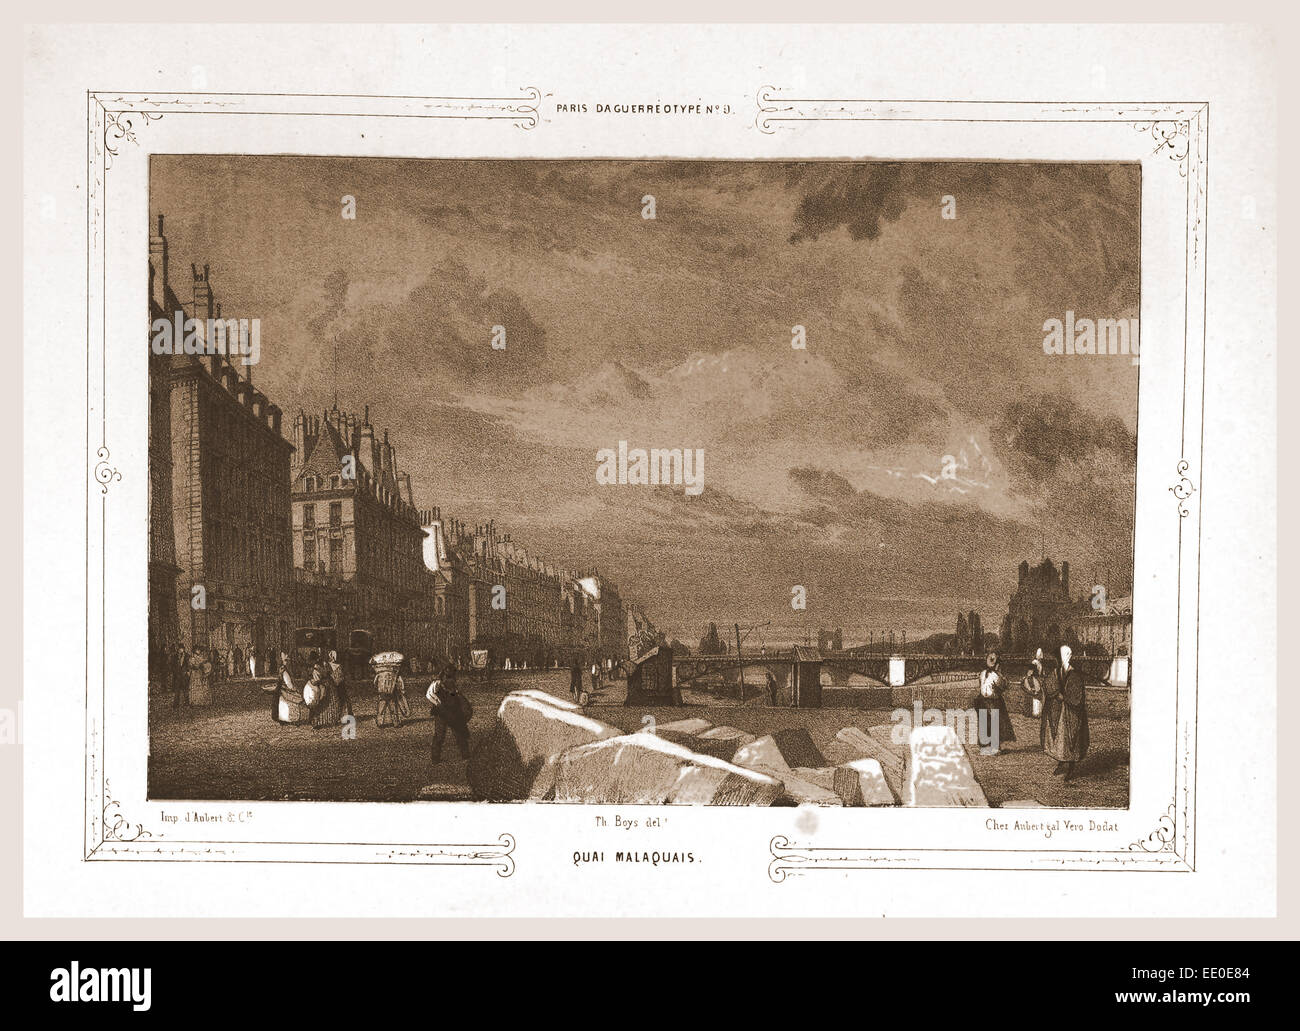 Quai Malaquais, Paris and surroundings, daguerreotype, M. C. Philipon, etc., 19th century engraving Stock Photo